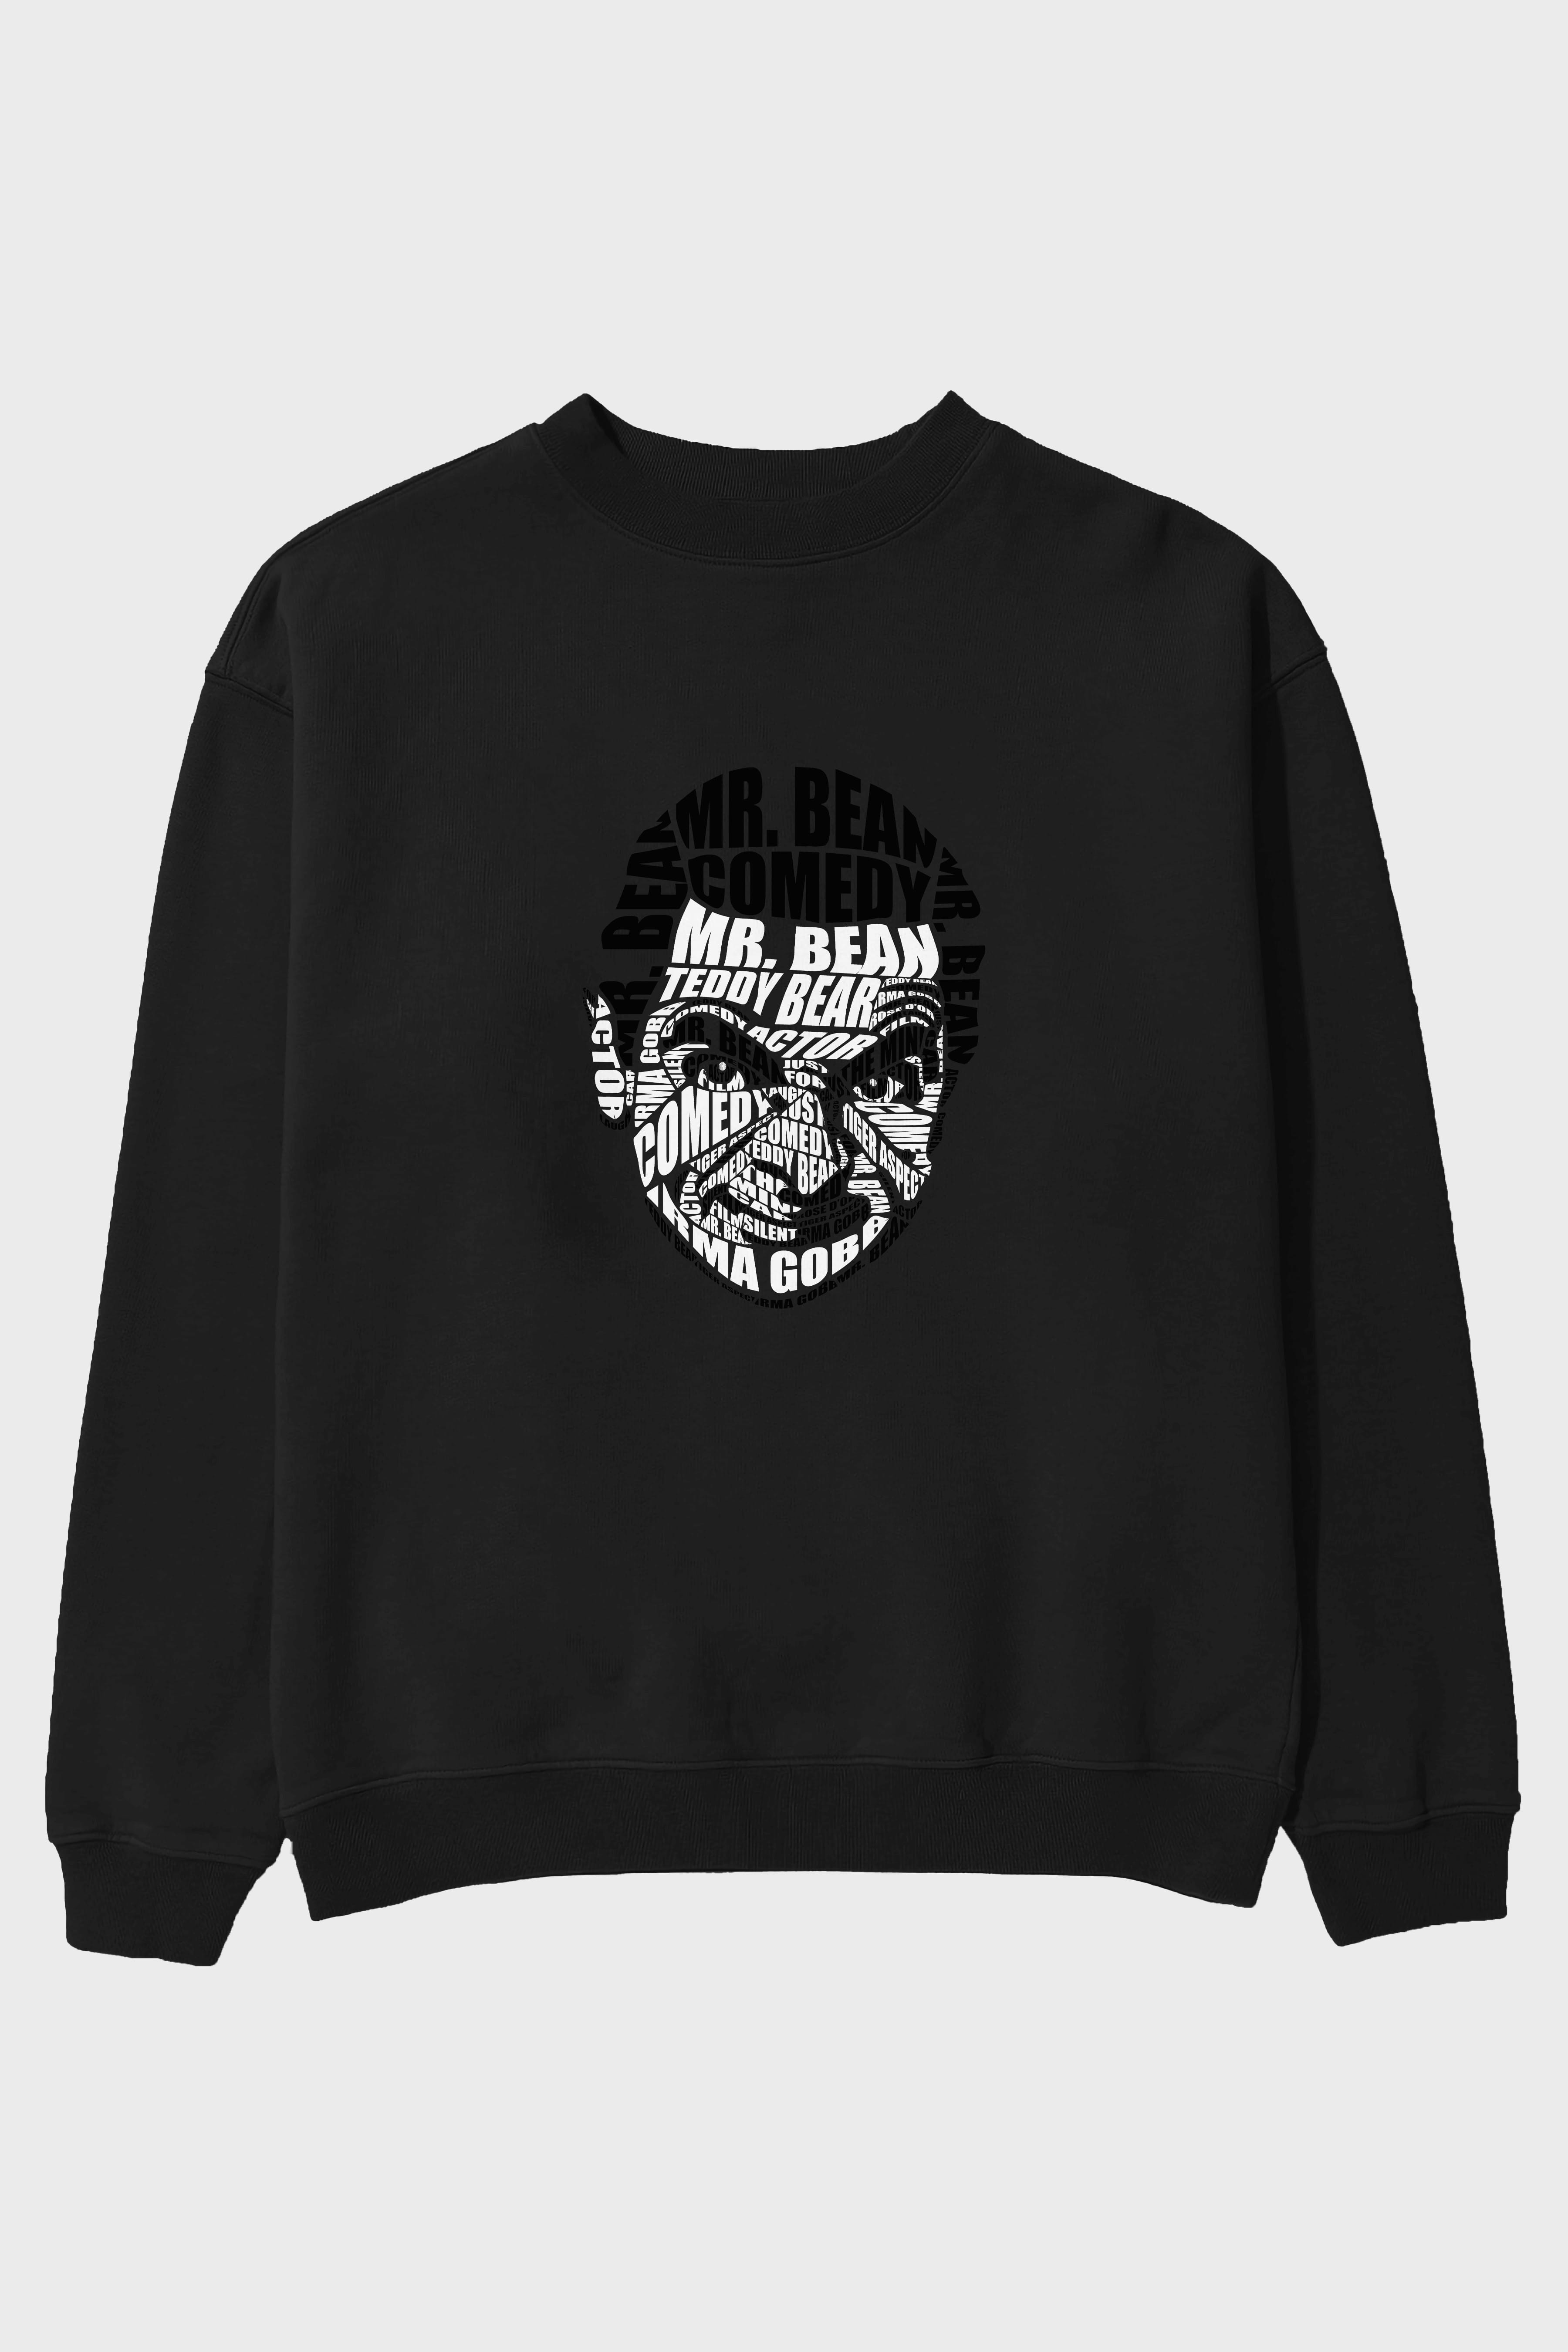 Mr Bean Calligram Ön Baskılı Oversize Sweatshirt Erkek Kadın Unisex